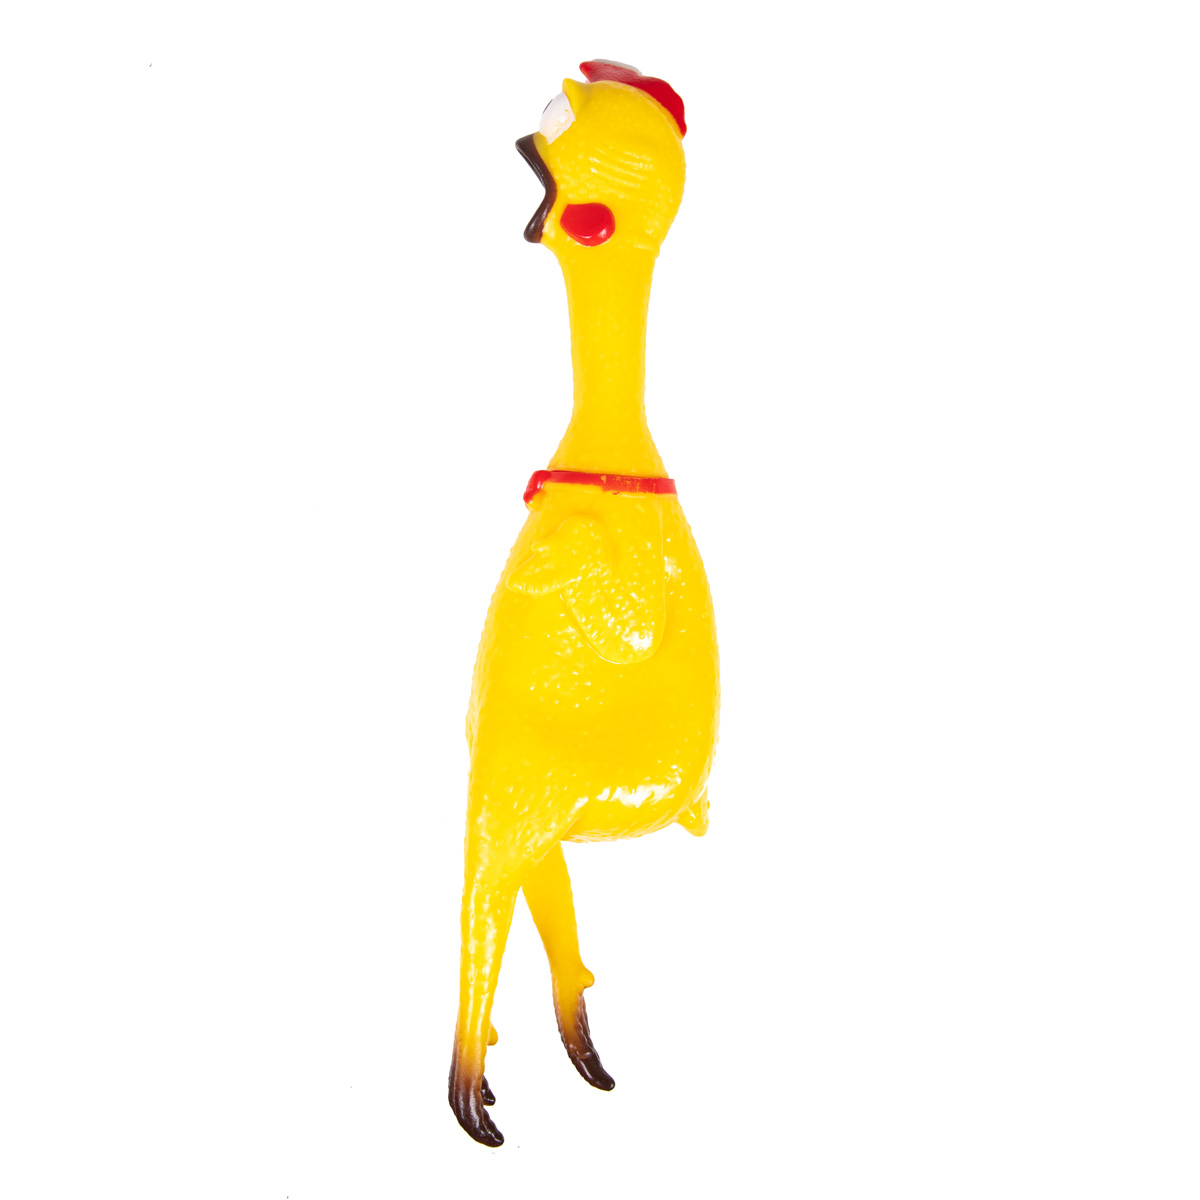 Brinquedo galinha que chia - Zolia Cocky